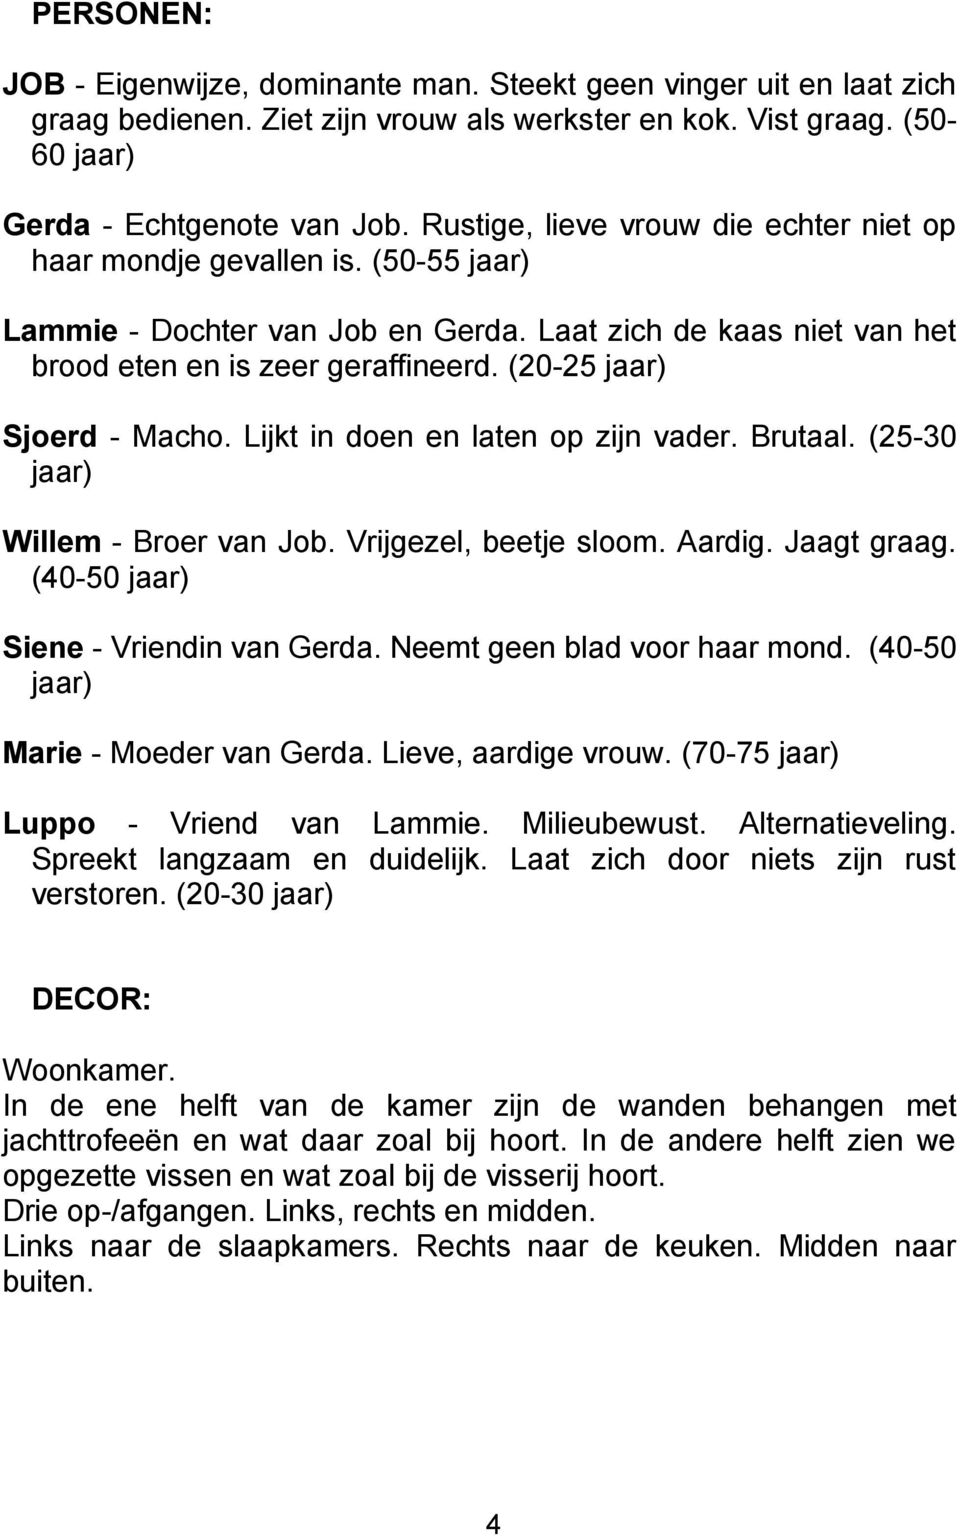 (20-25 jaar) Sjoerd - Macho. Lijkt in doen en laten op zijn vader. Brutaal. (25-30 jaar) Willem - Broer van Job. Vrijgezel, beetje sloom. Aardig. Jaagt graag. (40-50 jaar) Siene - Vriendin van Gerda.